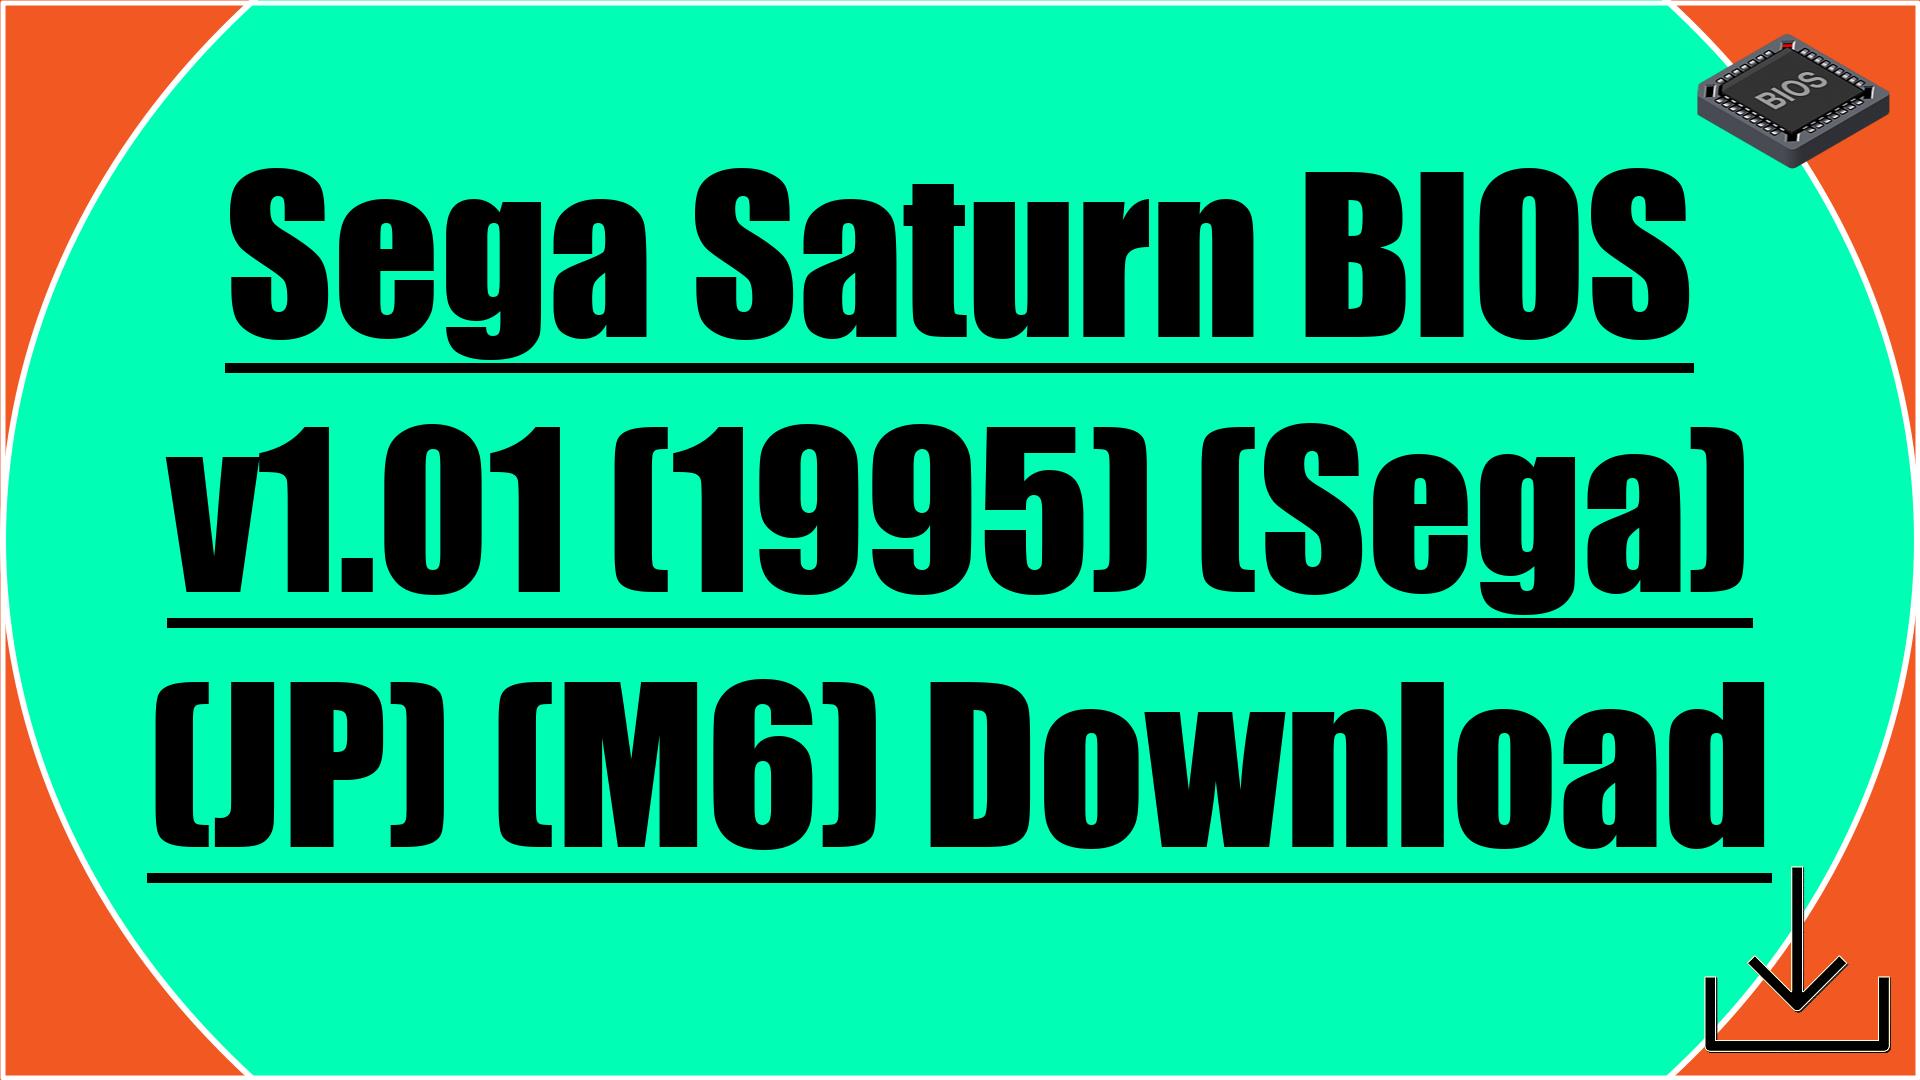 Sega Saturn BIOS v1.01 (1995) (Sega) (JP) (M6) Download